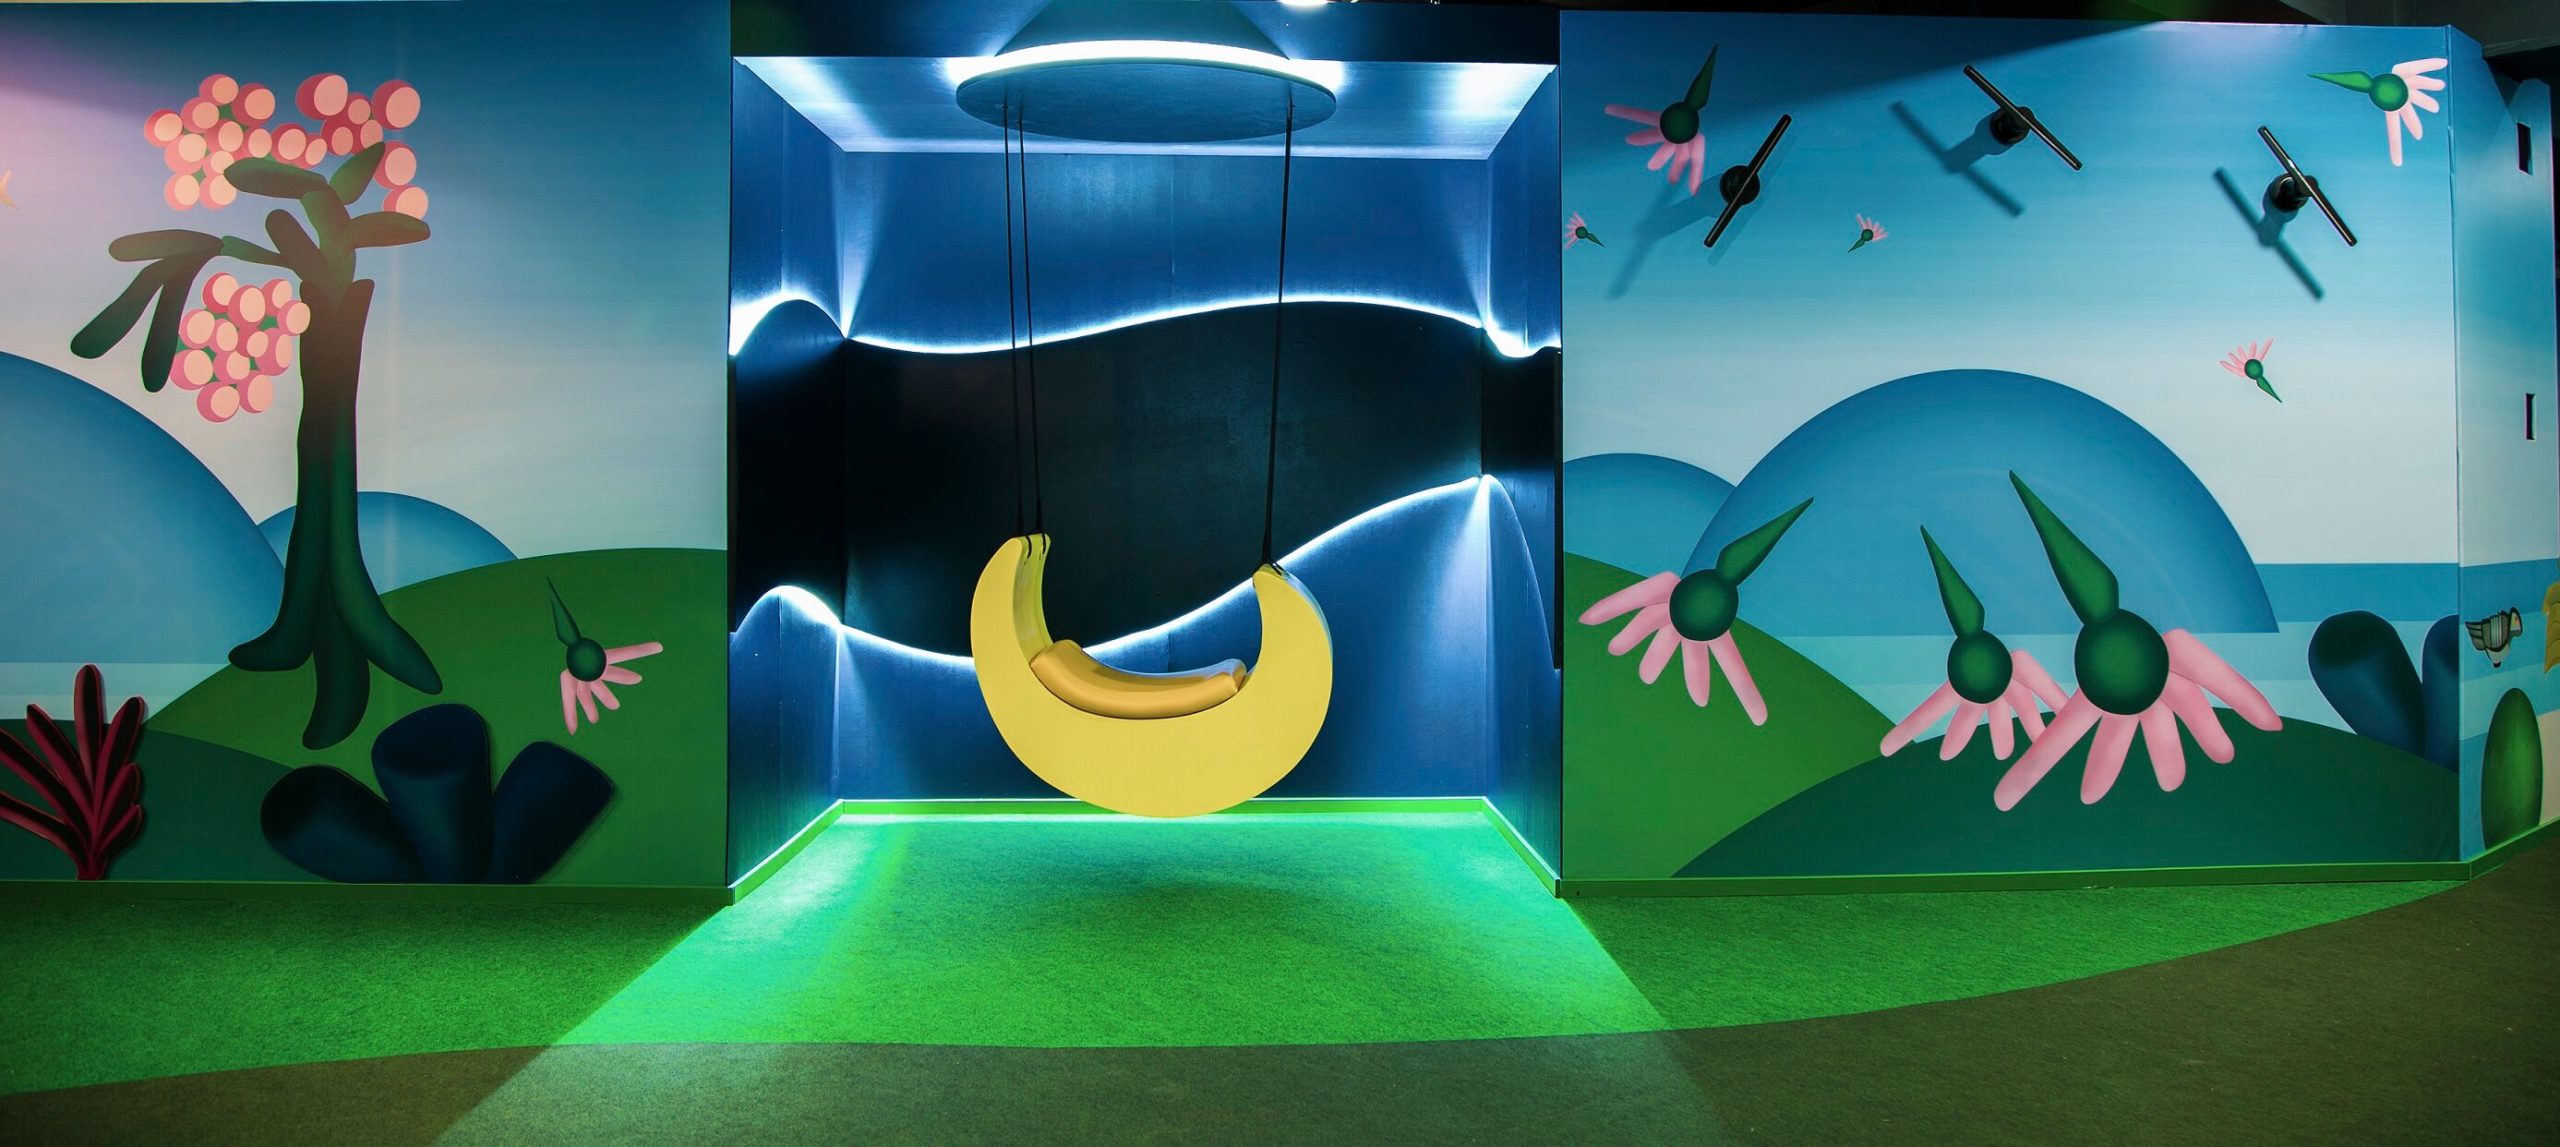 No espaço dedicado a obra "A Lua", o público pode brincar em um balanço em formato de lua. Foto: Divulgação. 